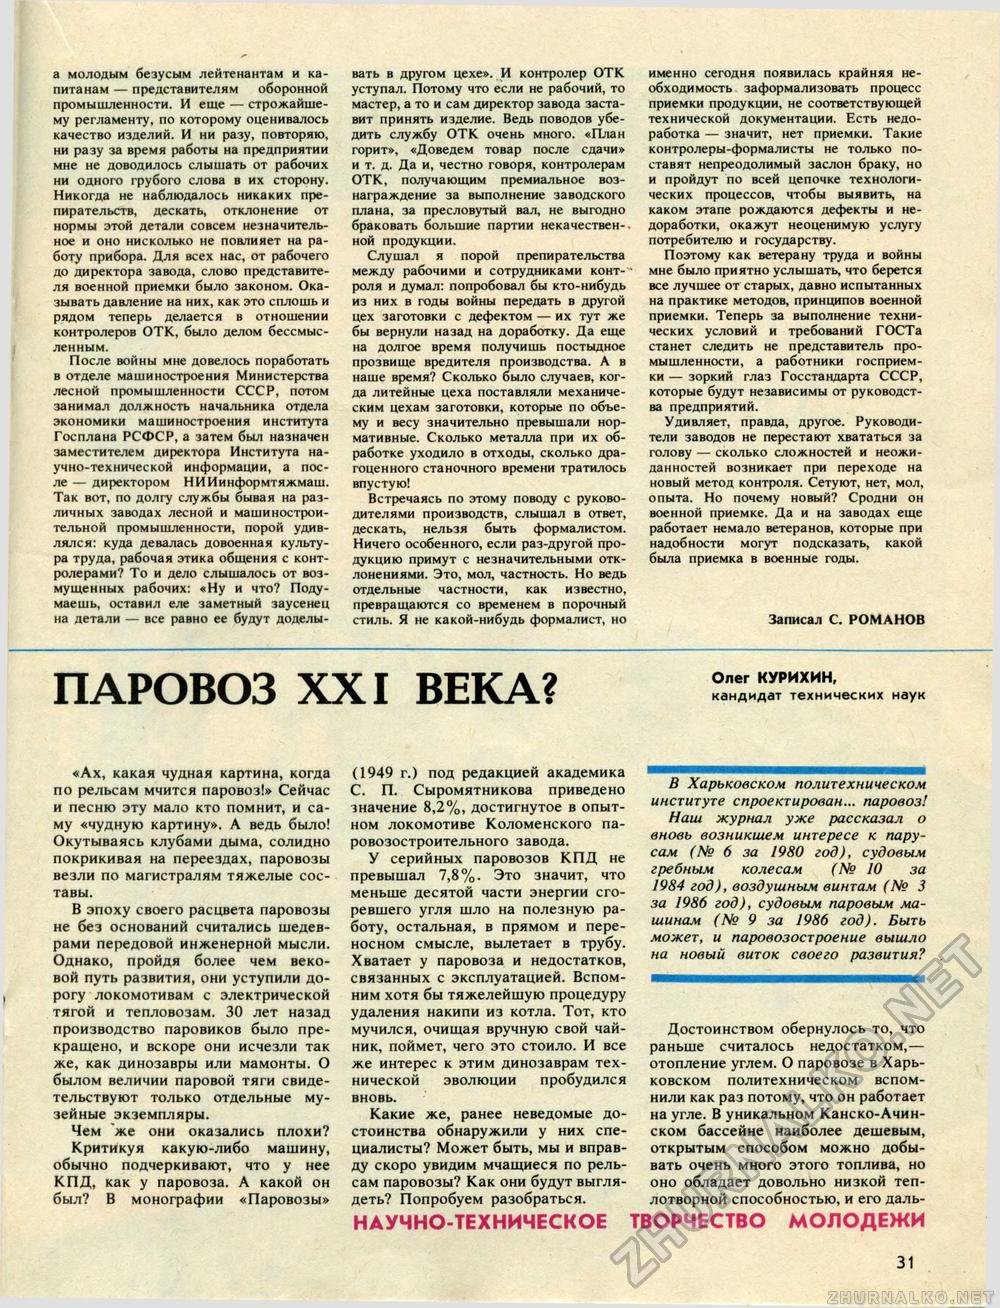  -  1987-01,  33